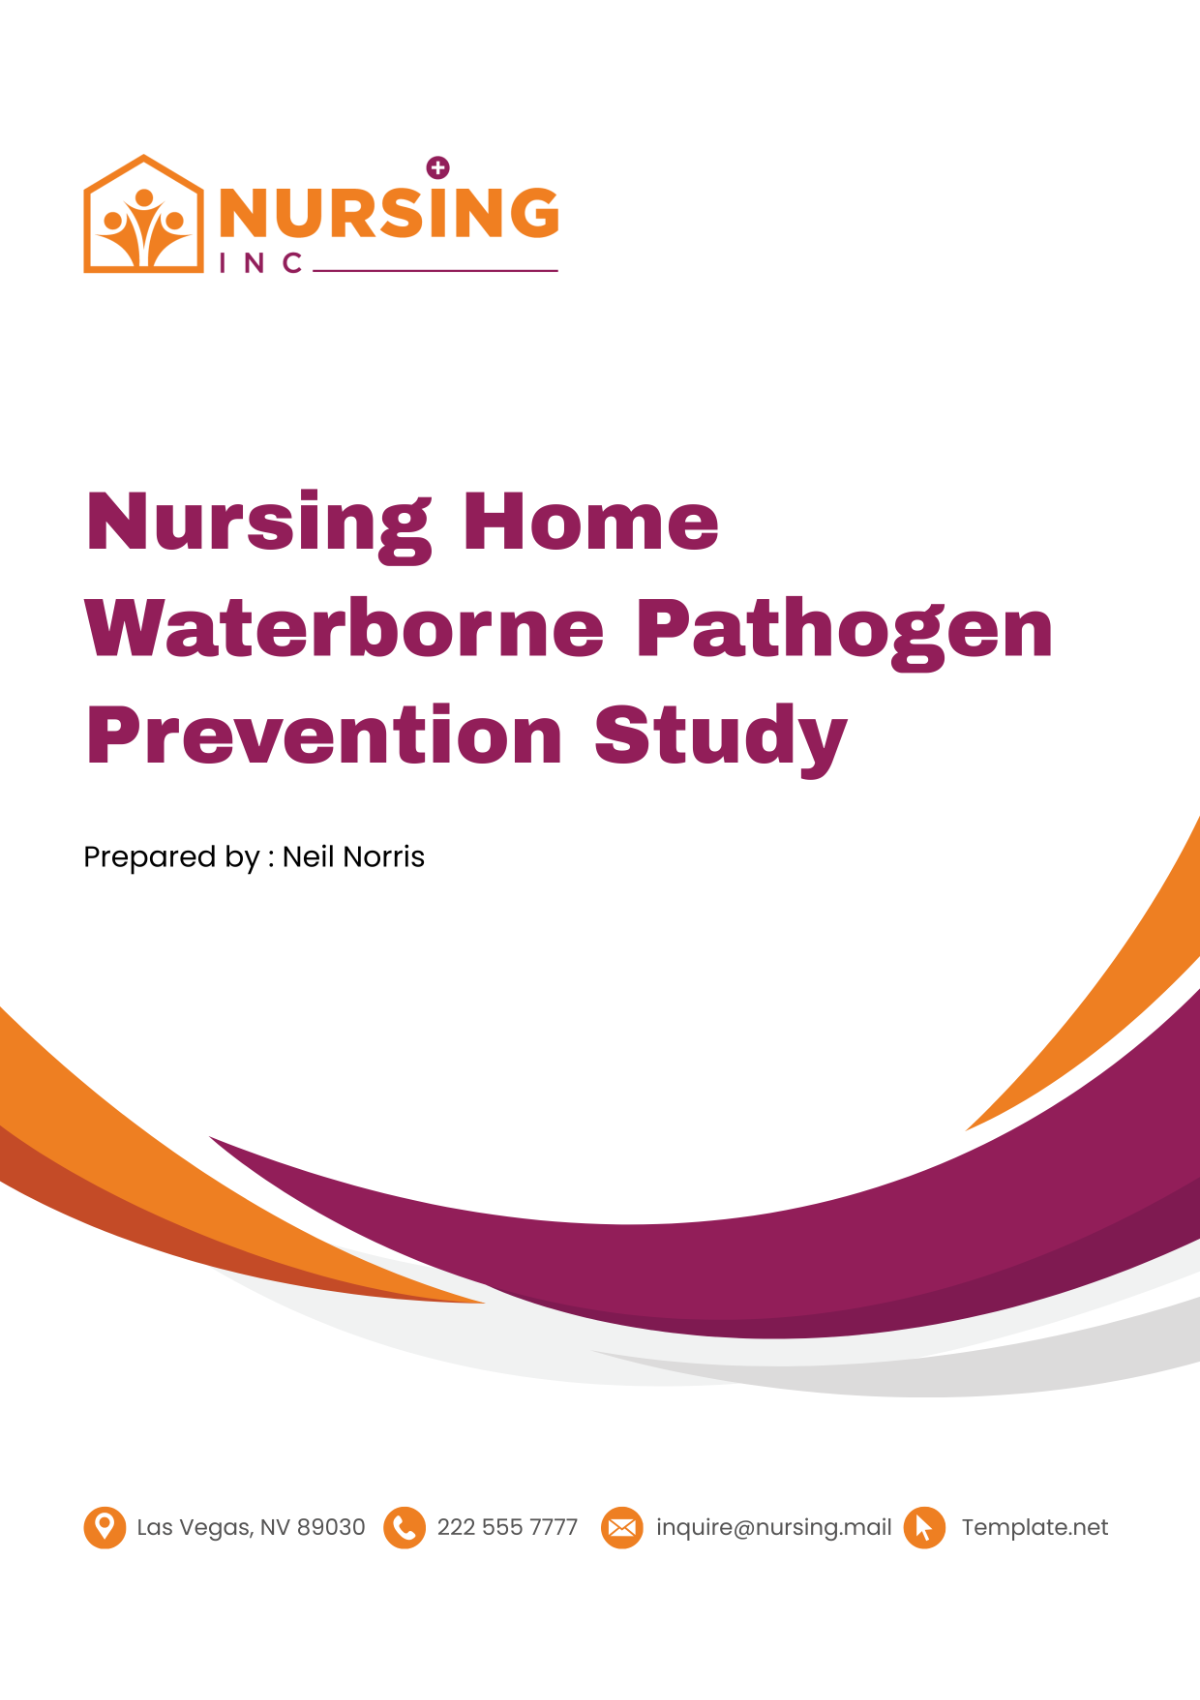 Free Nursing Home Waterborne Pathogen Prevention Study Template